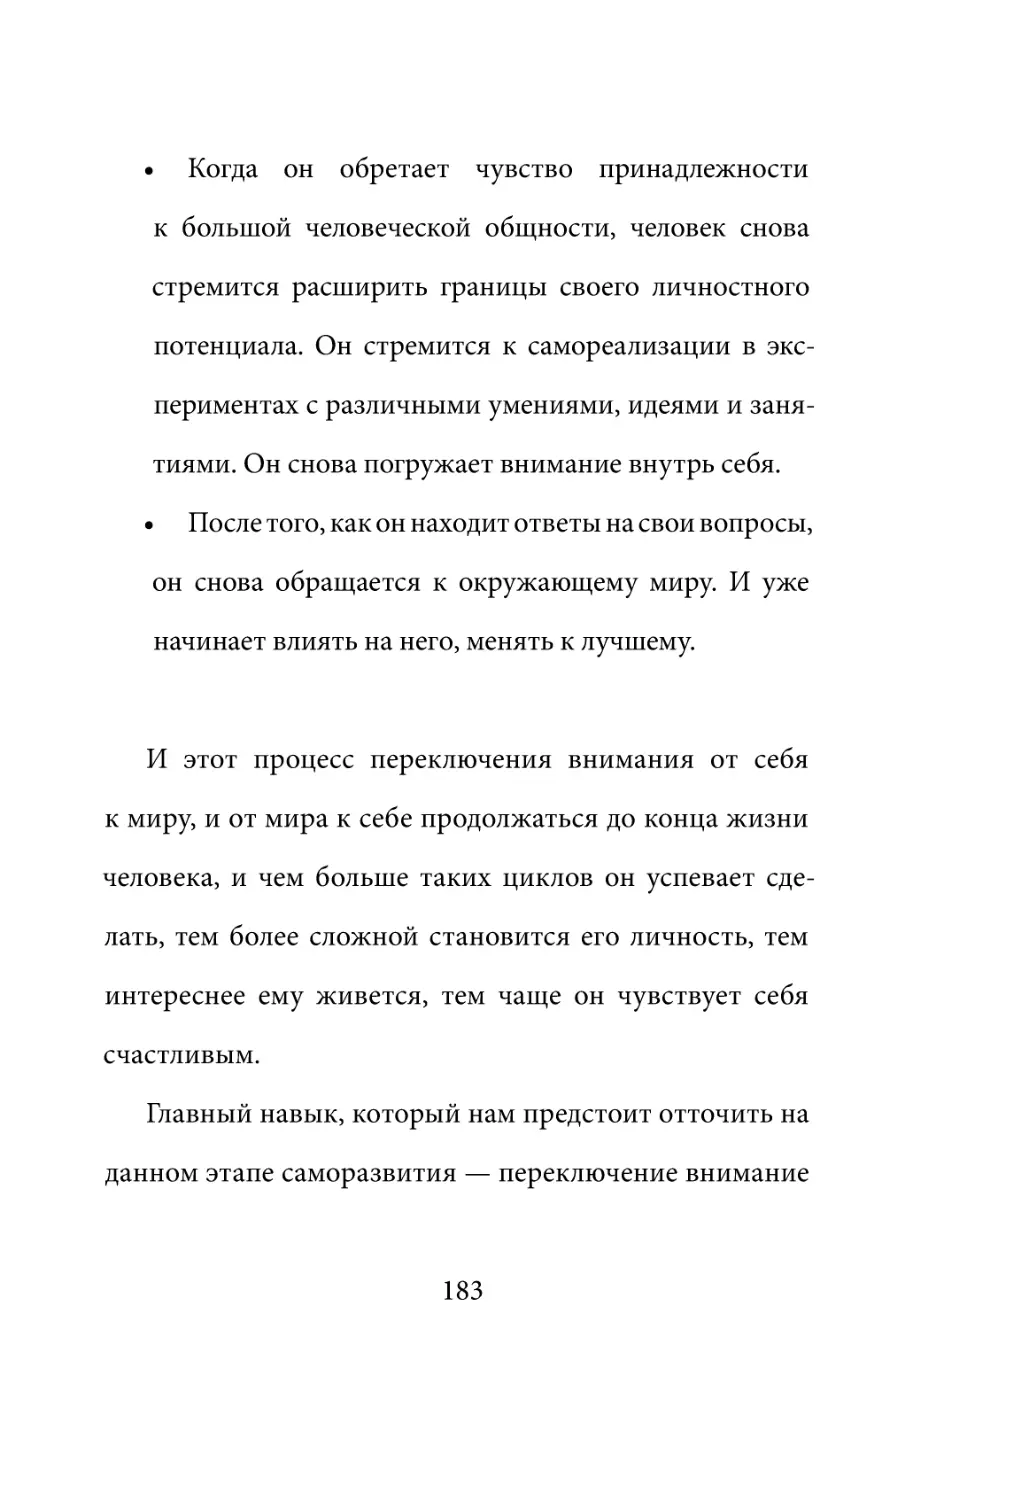 Sergey_Filippov_Dnevnik_samorazvitia_Evolyutsia_Vnutrennego_Sostoyania_183.pdf (p.183)